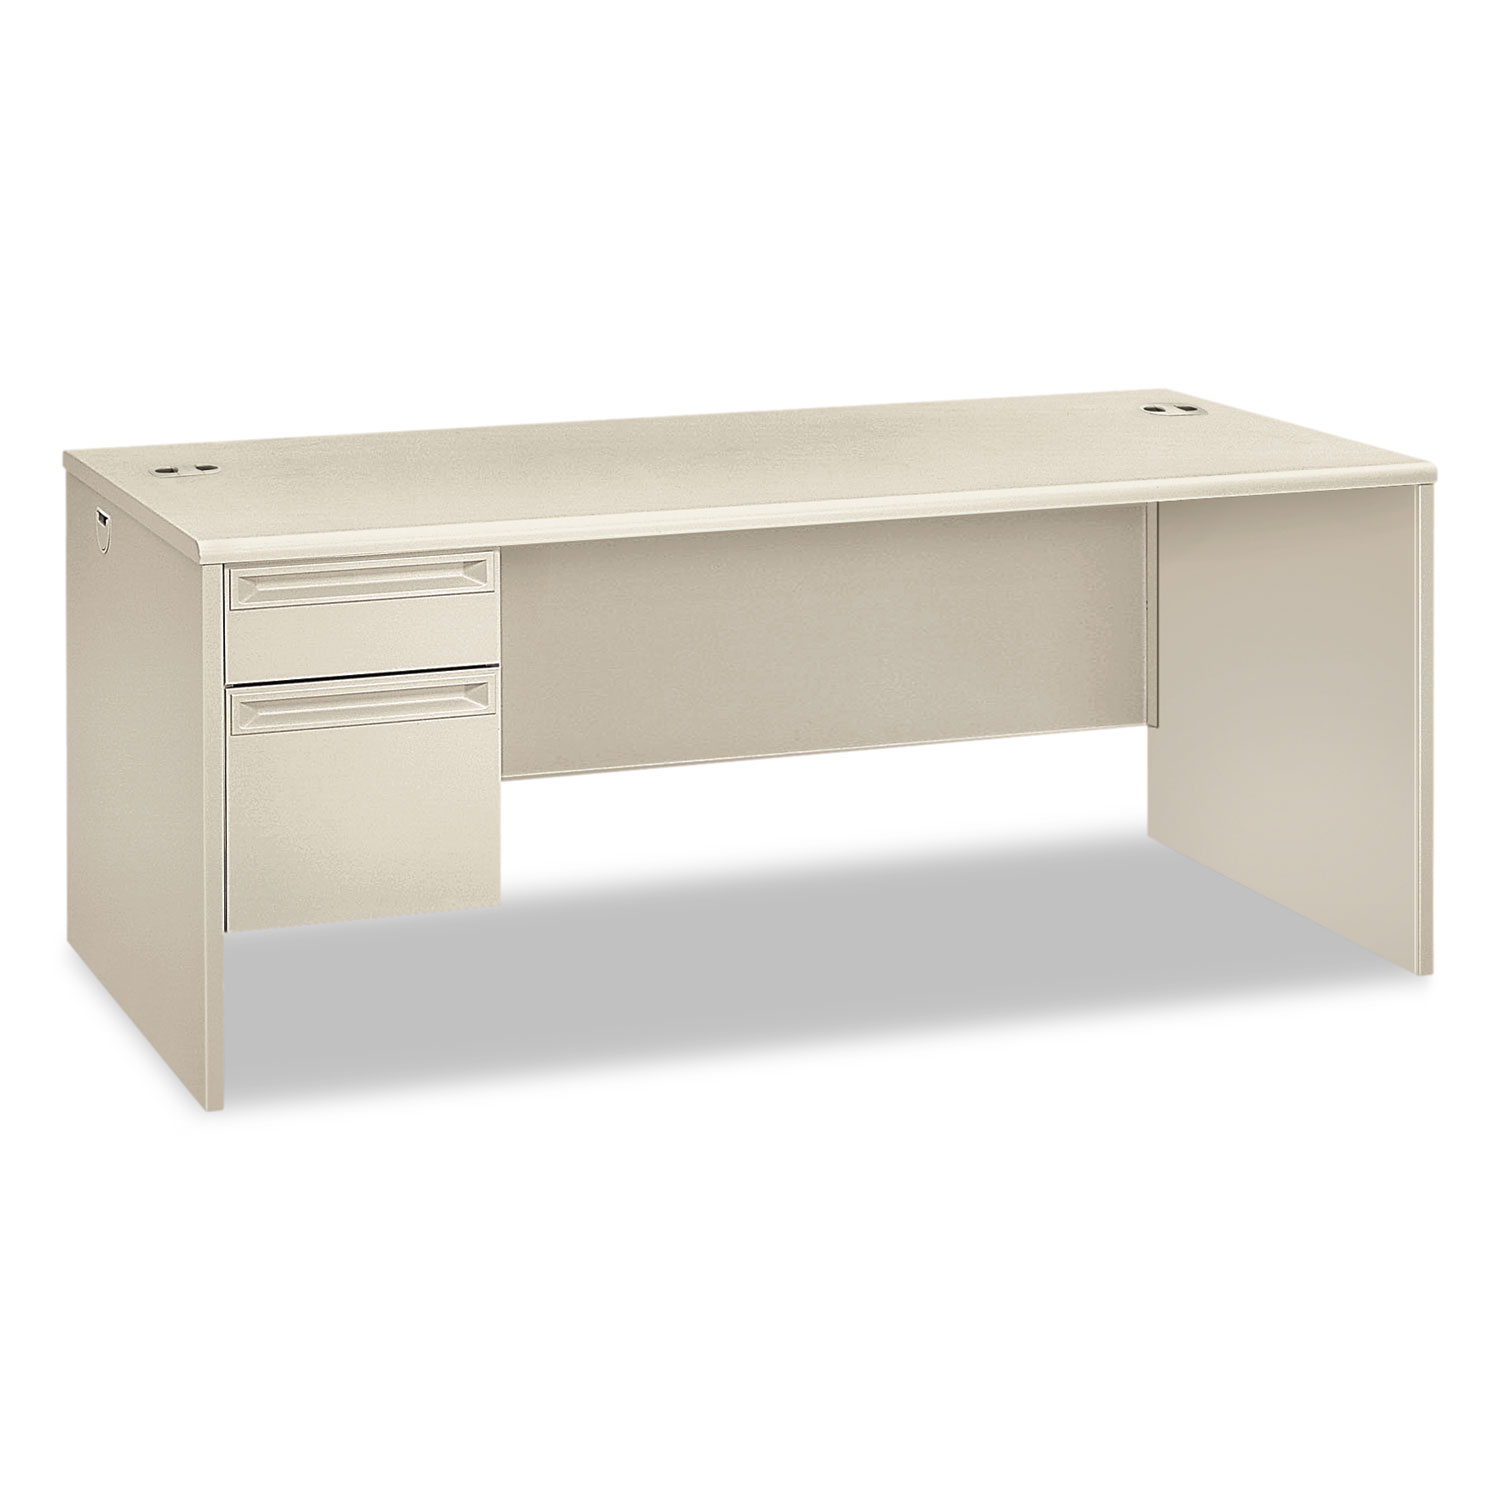 38000 Series Left Pedestal Desk, 72w x 36d x 29-1/2h, Light Gray